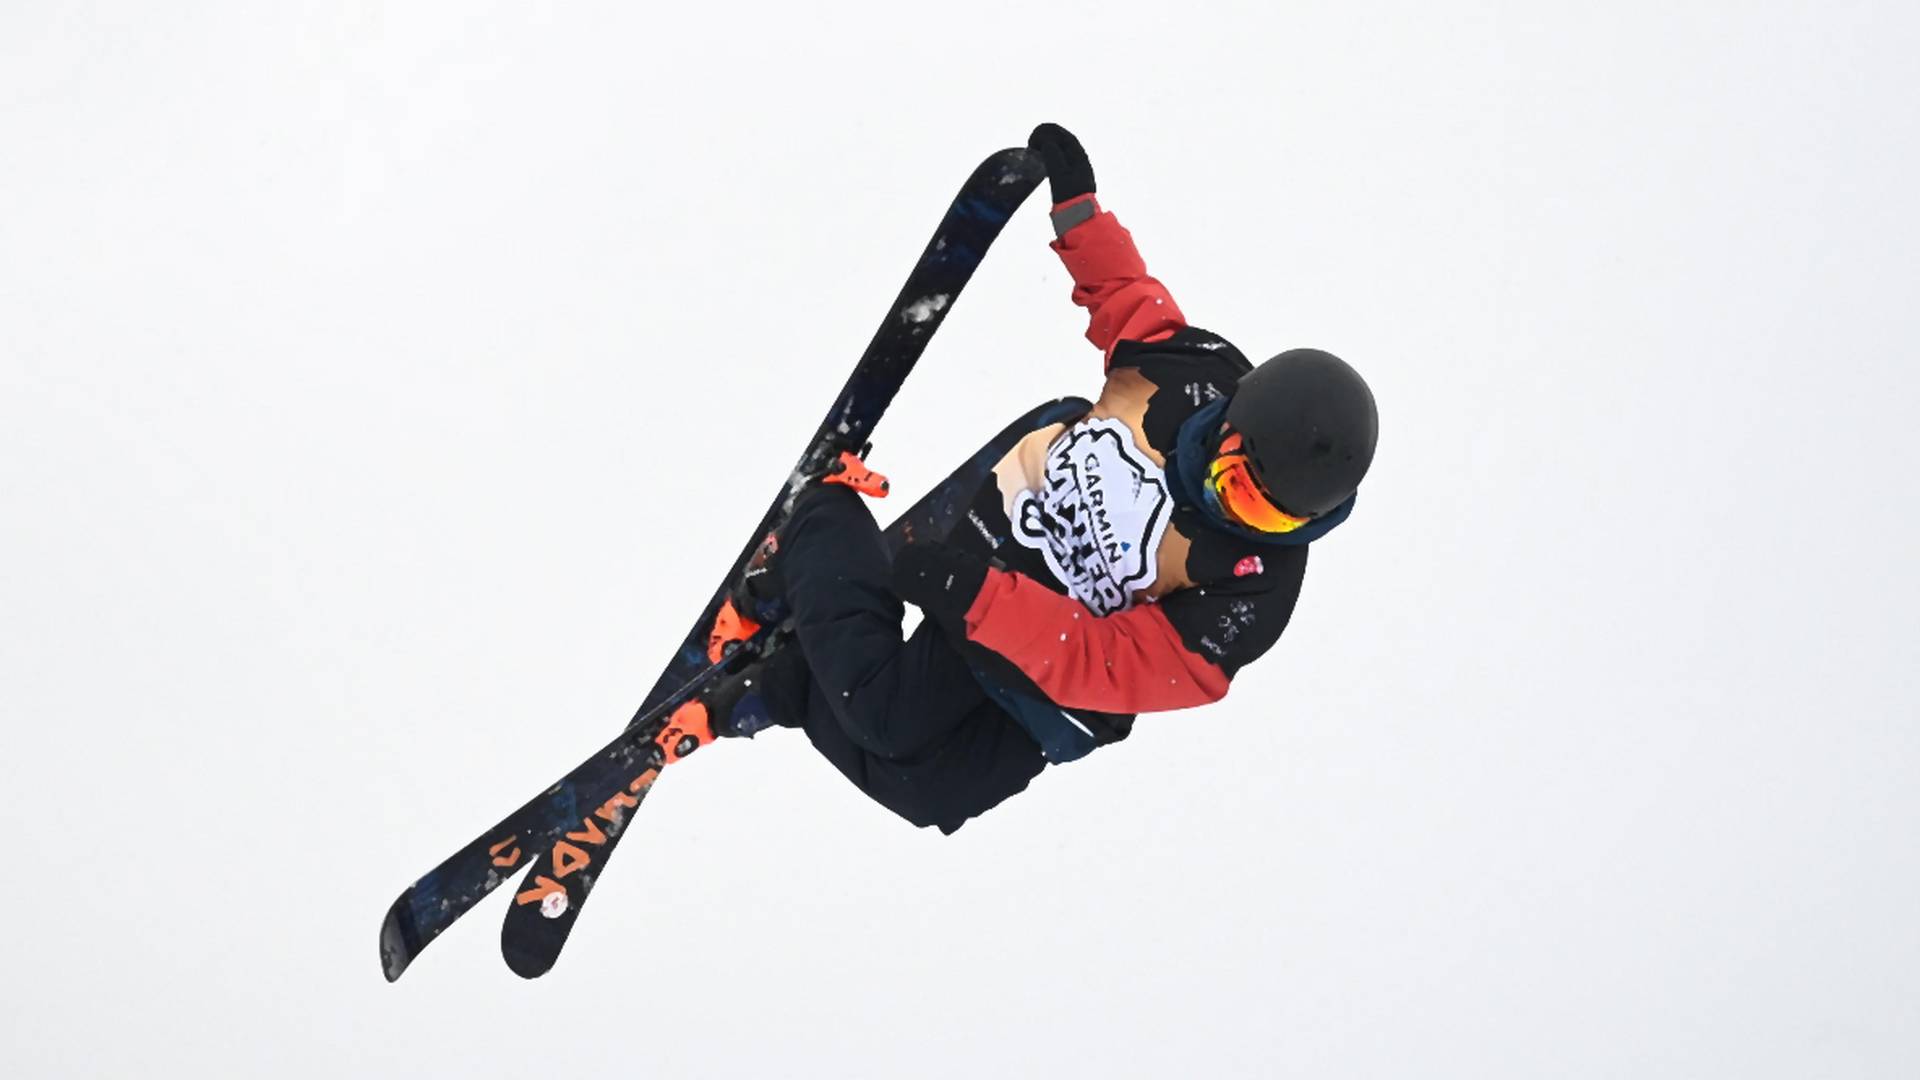 Snowboardzista Kristian Salac i narciarz Dmitrii Mulendeev najlepsi w kwalifikacjach Pucharu Europy FIS w Białce Tatrzańskiej